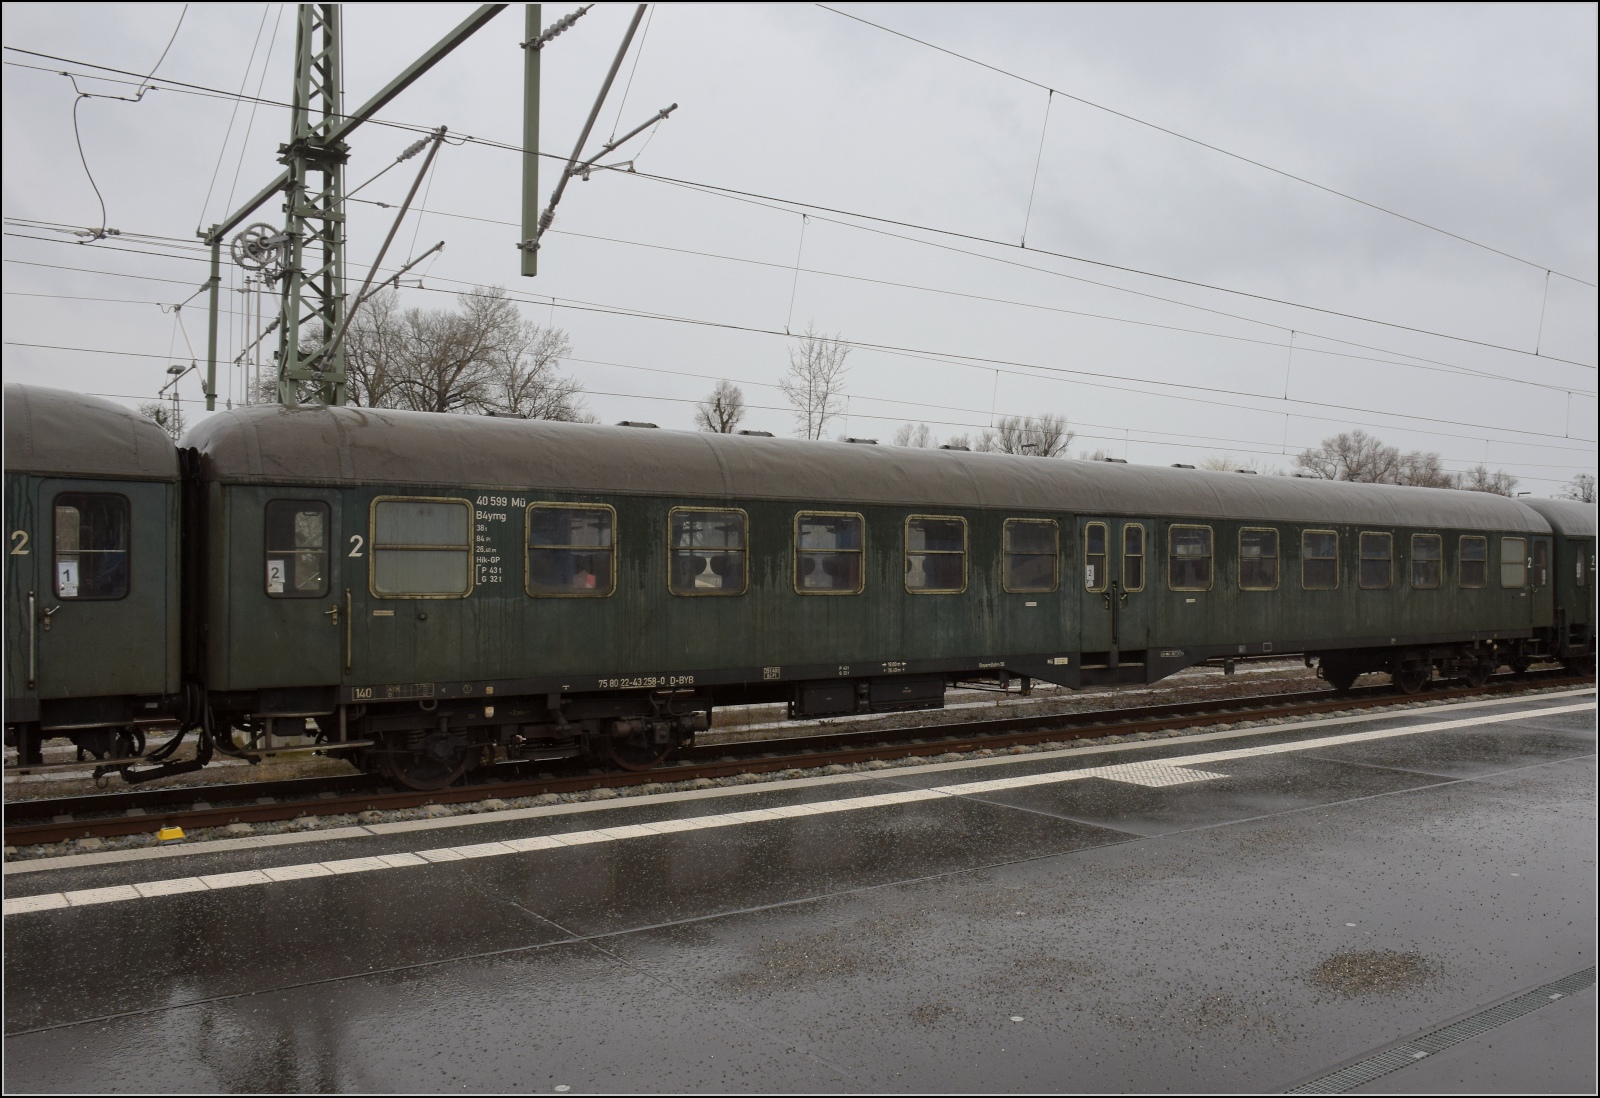 Mitteleinstiegswagen B4ymg der DB mit der Nummer 40 599 Mü. Die UIC-Nummer lautet 75 80 22-43 258-0 D-BYB. Lindau-Reutin, Februar 2023.